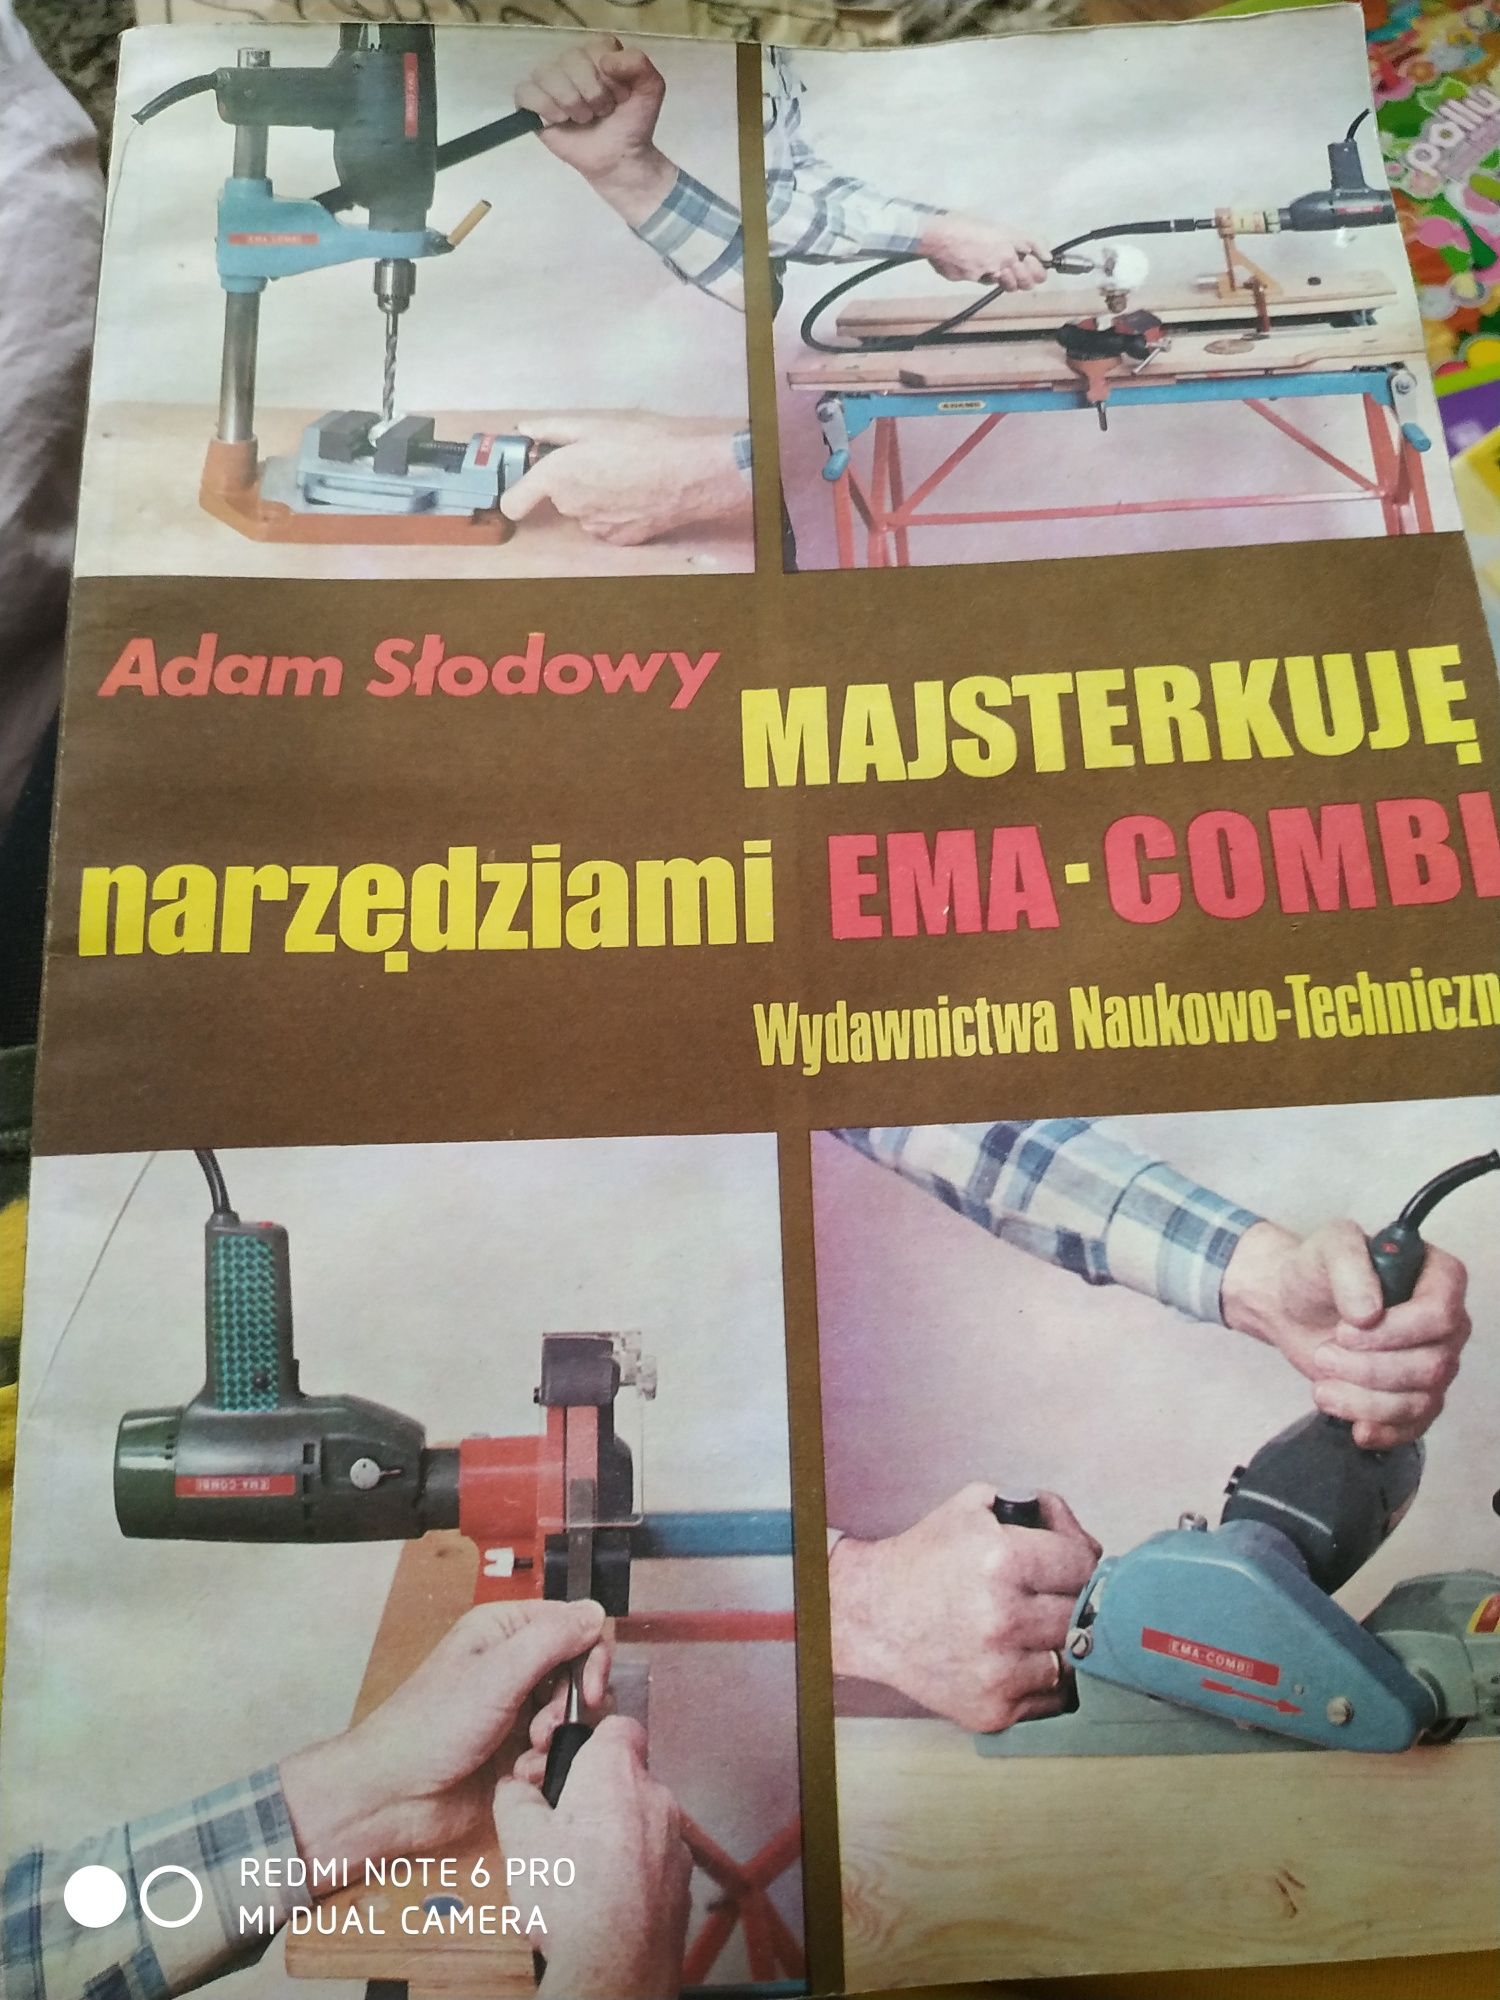 Majsterkuje narzędziami. 1986